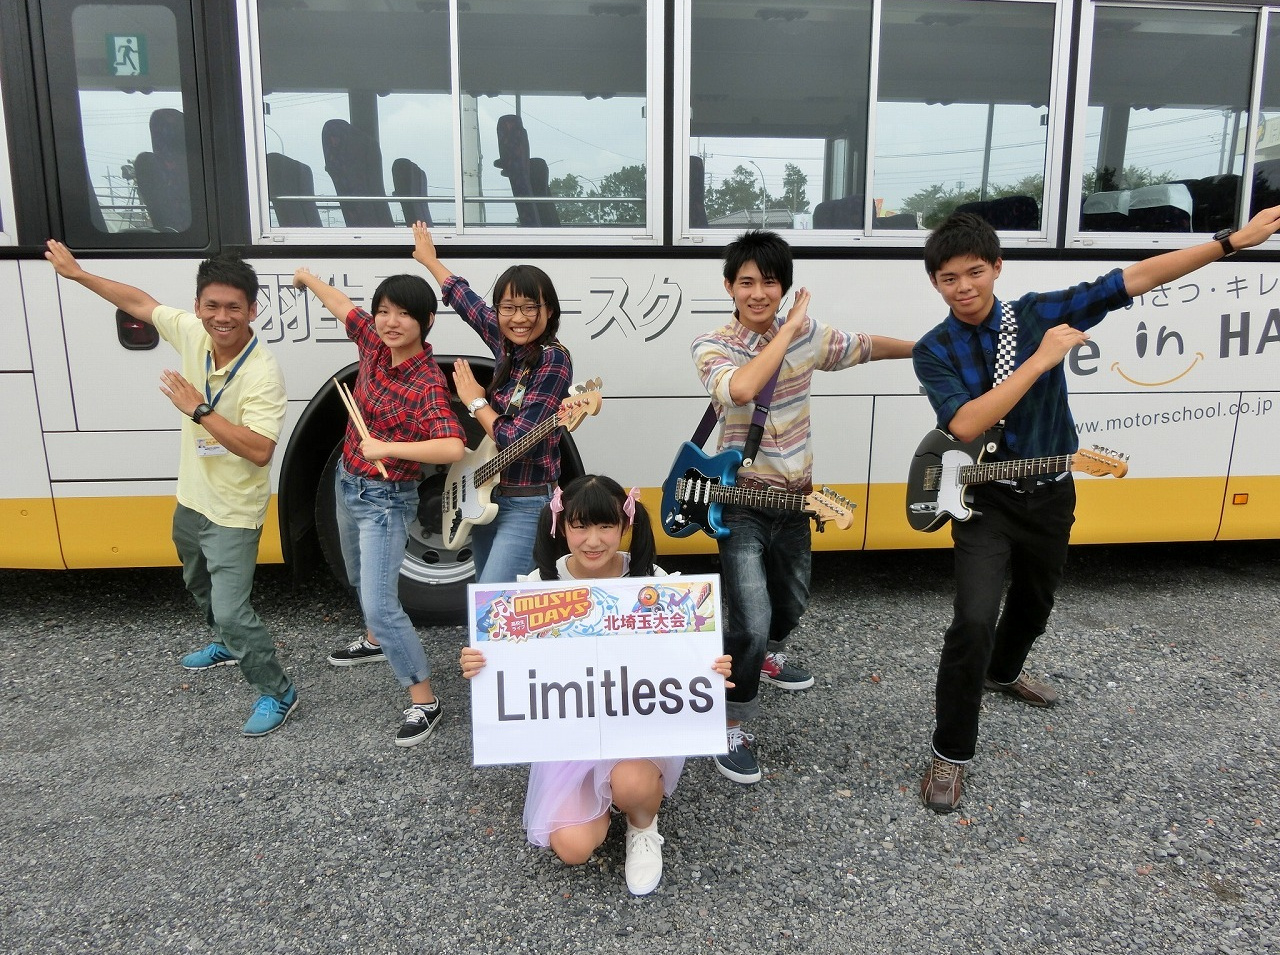 03 Limitless